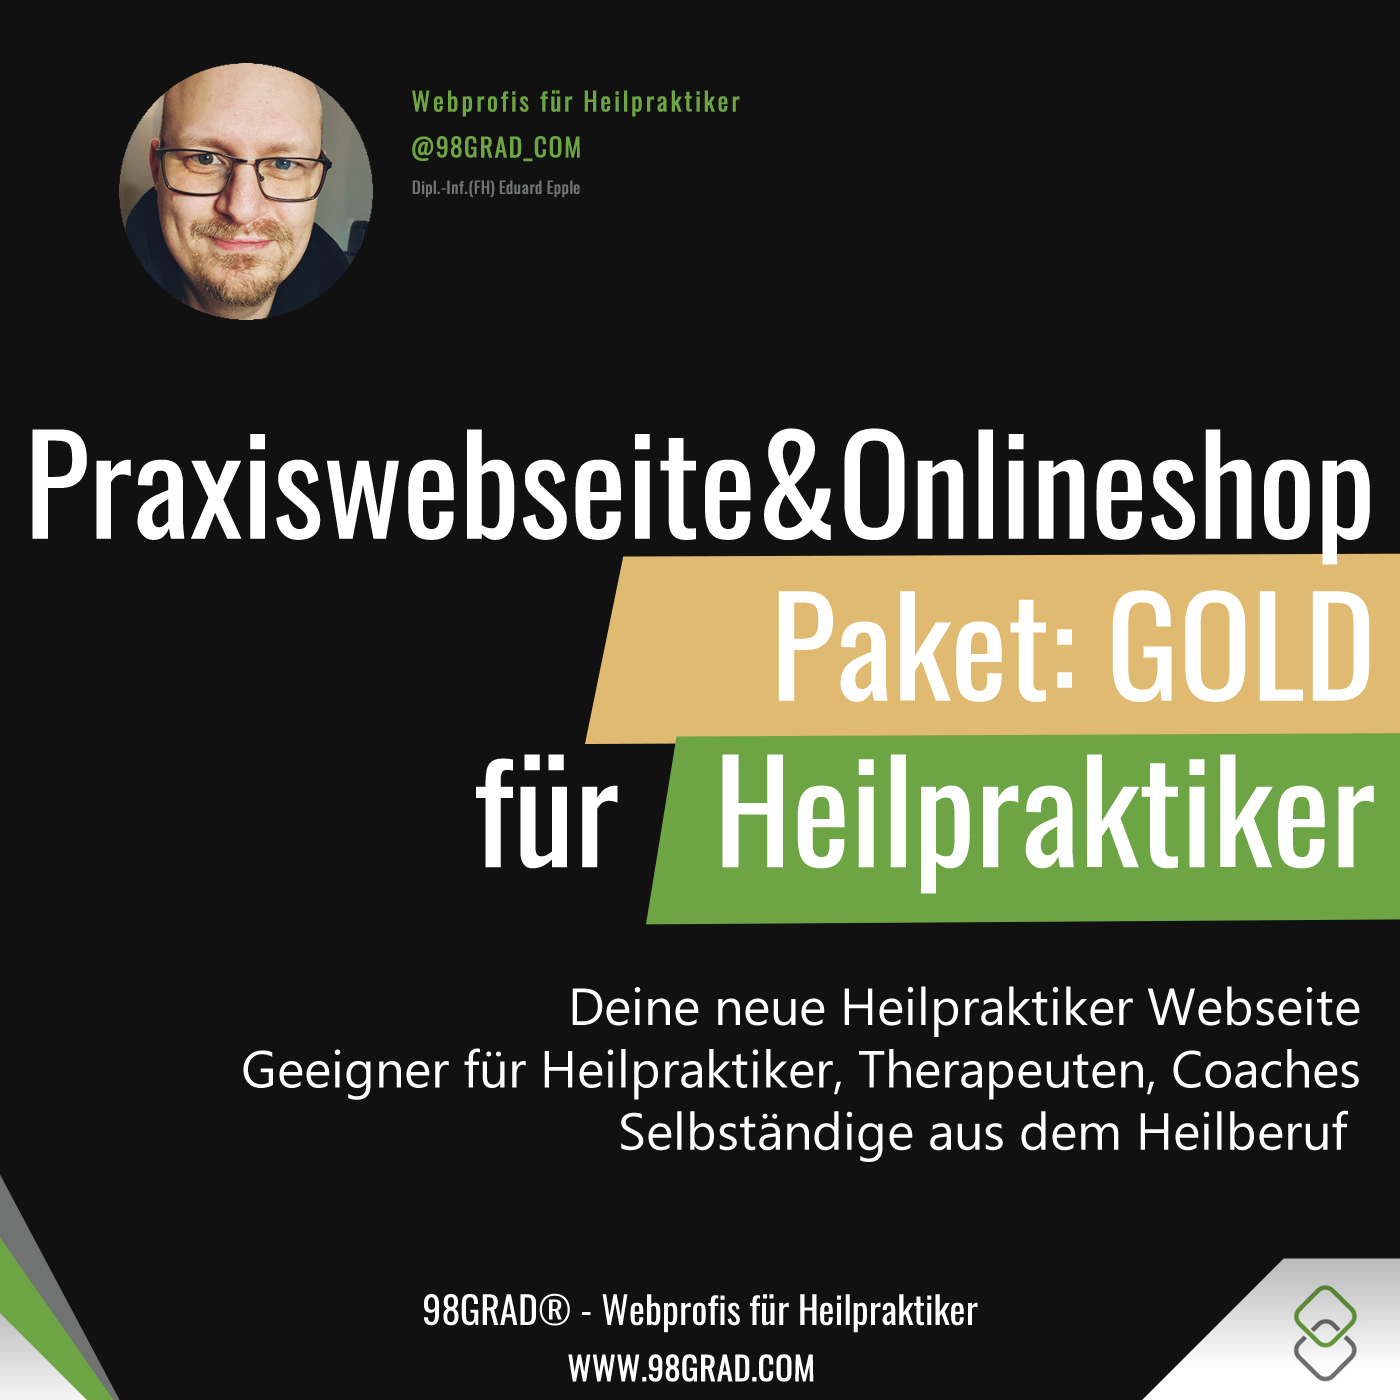 praxiswebseite-gold-heilpraktiker